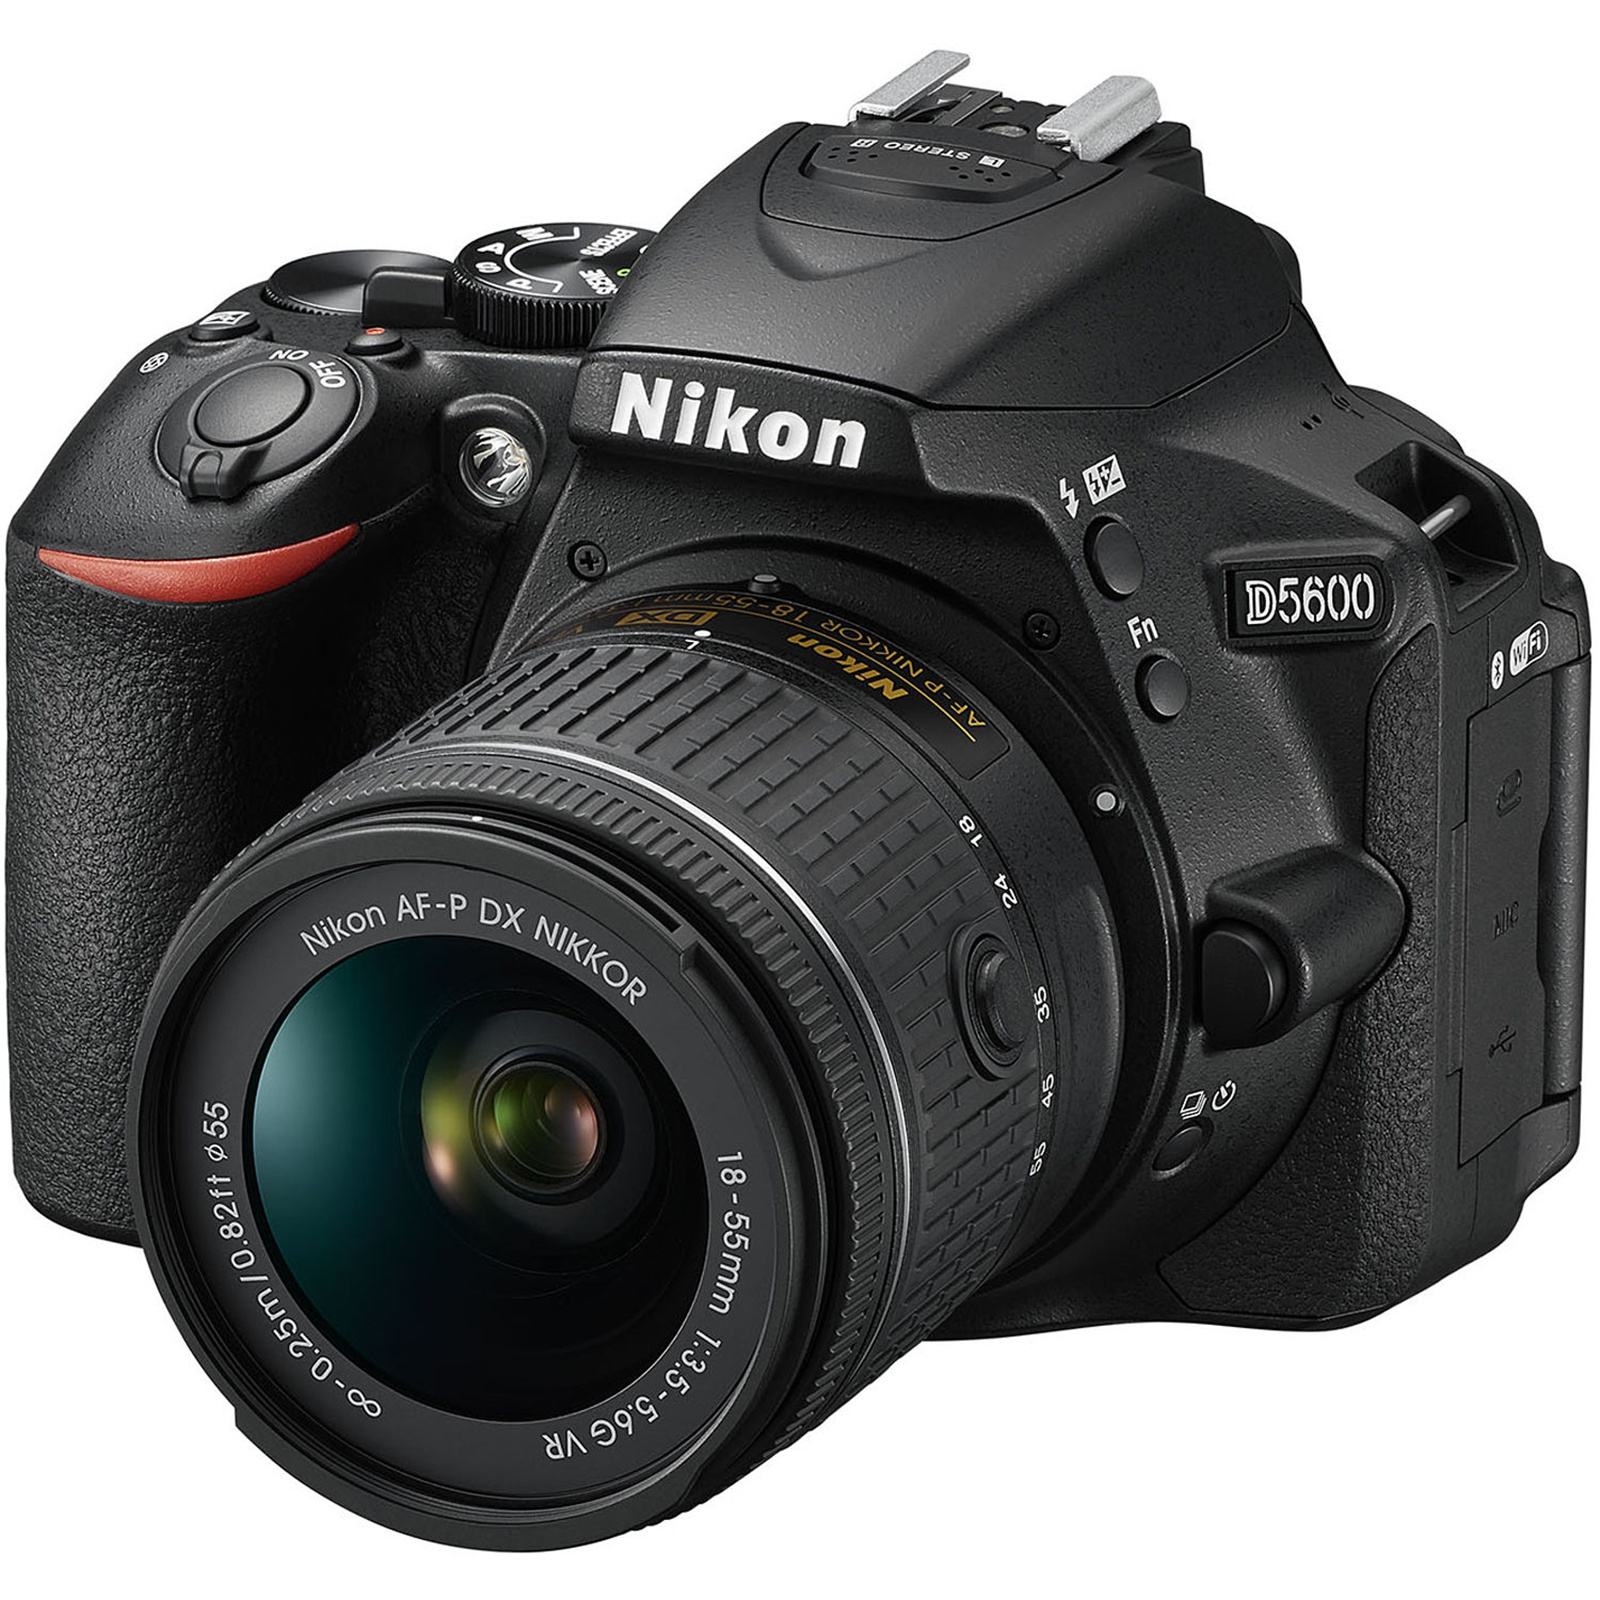 Hãy mua ngay cho mình một chiếc máy ảnh Nikon D5600 DSLR để hiện thực hóa những ý tưởng sáng tạo và lưu giữ những khoảnh khắc đáng nhớ trong cuộc sống của bạn. 